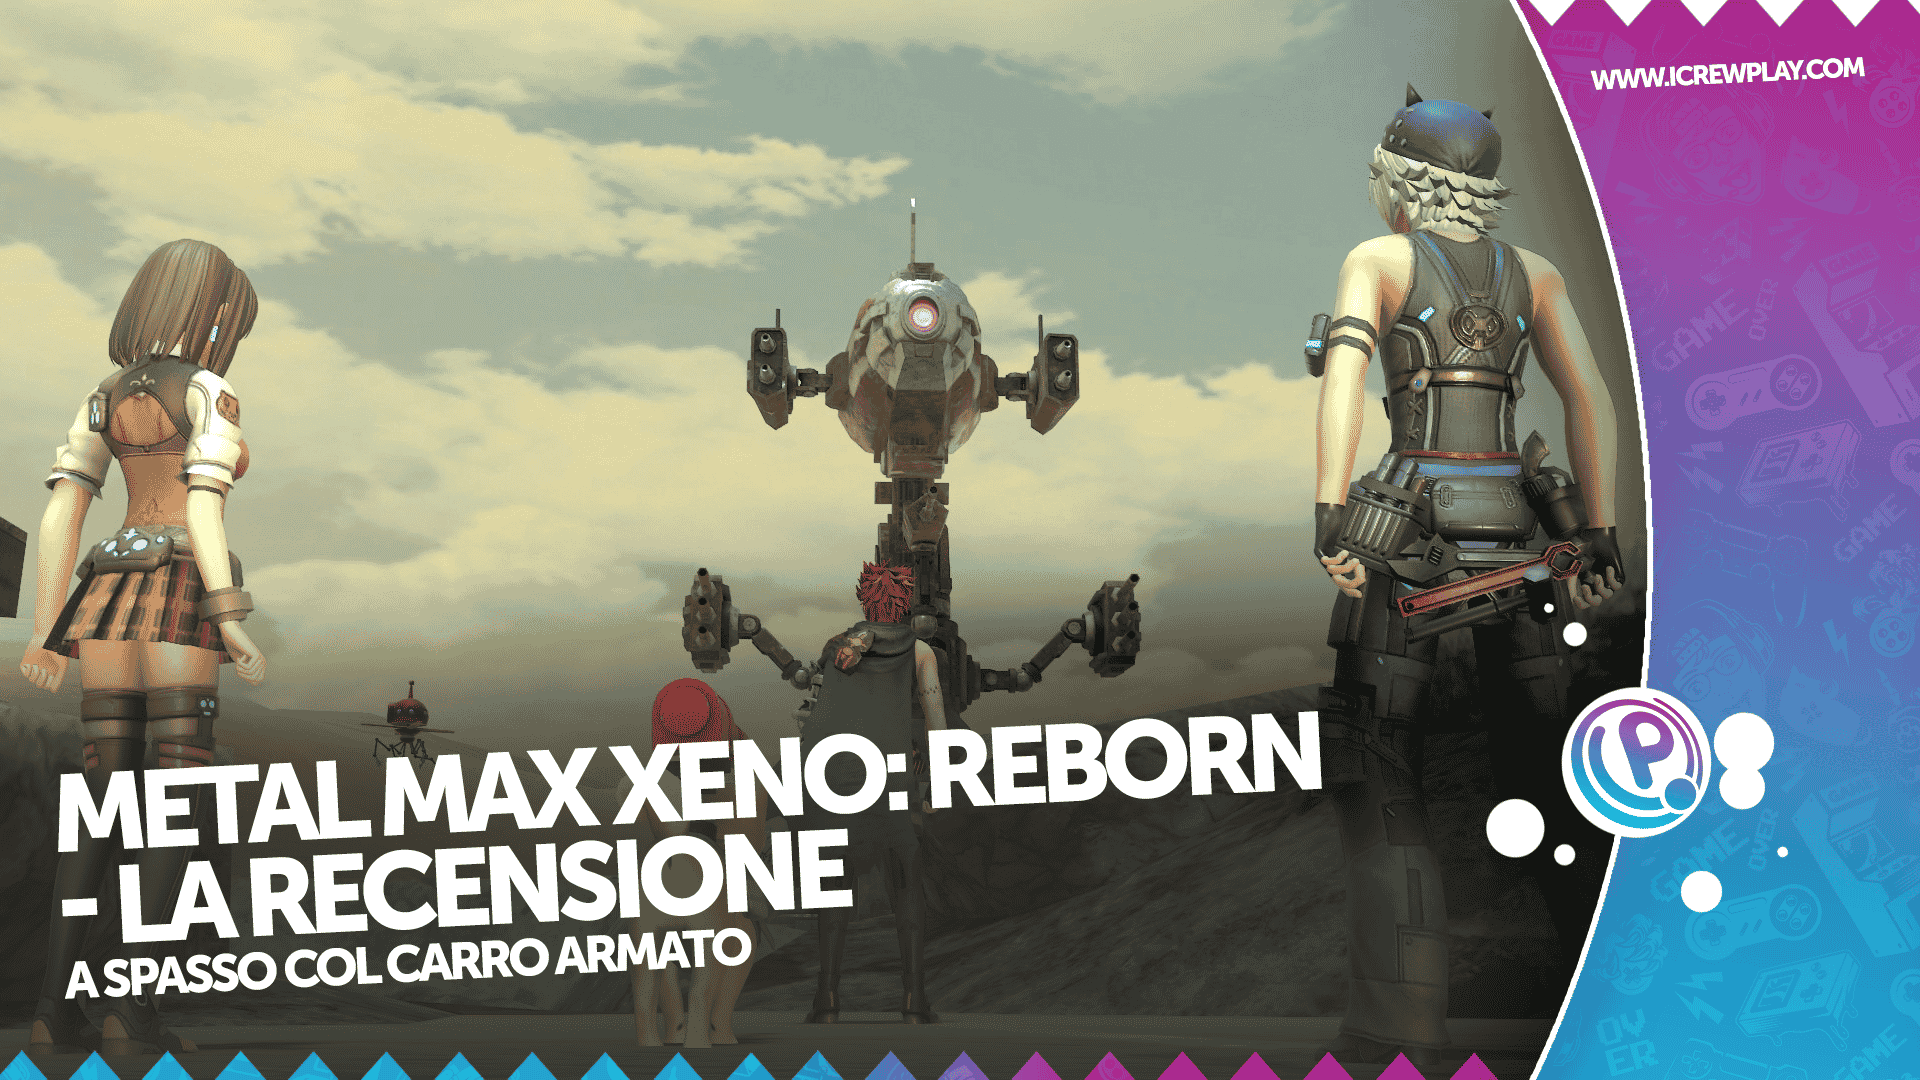 Metal Max Xeno Reborn - la recensione per Nintendo Switch 8